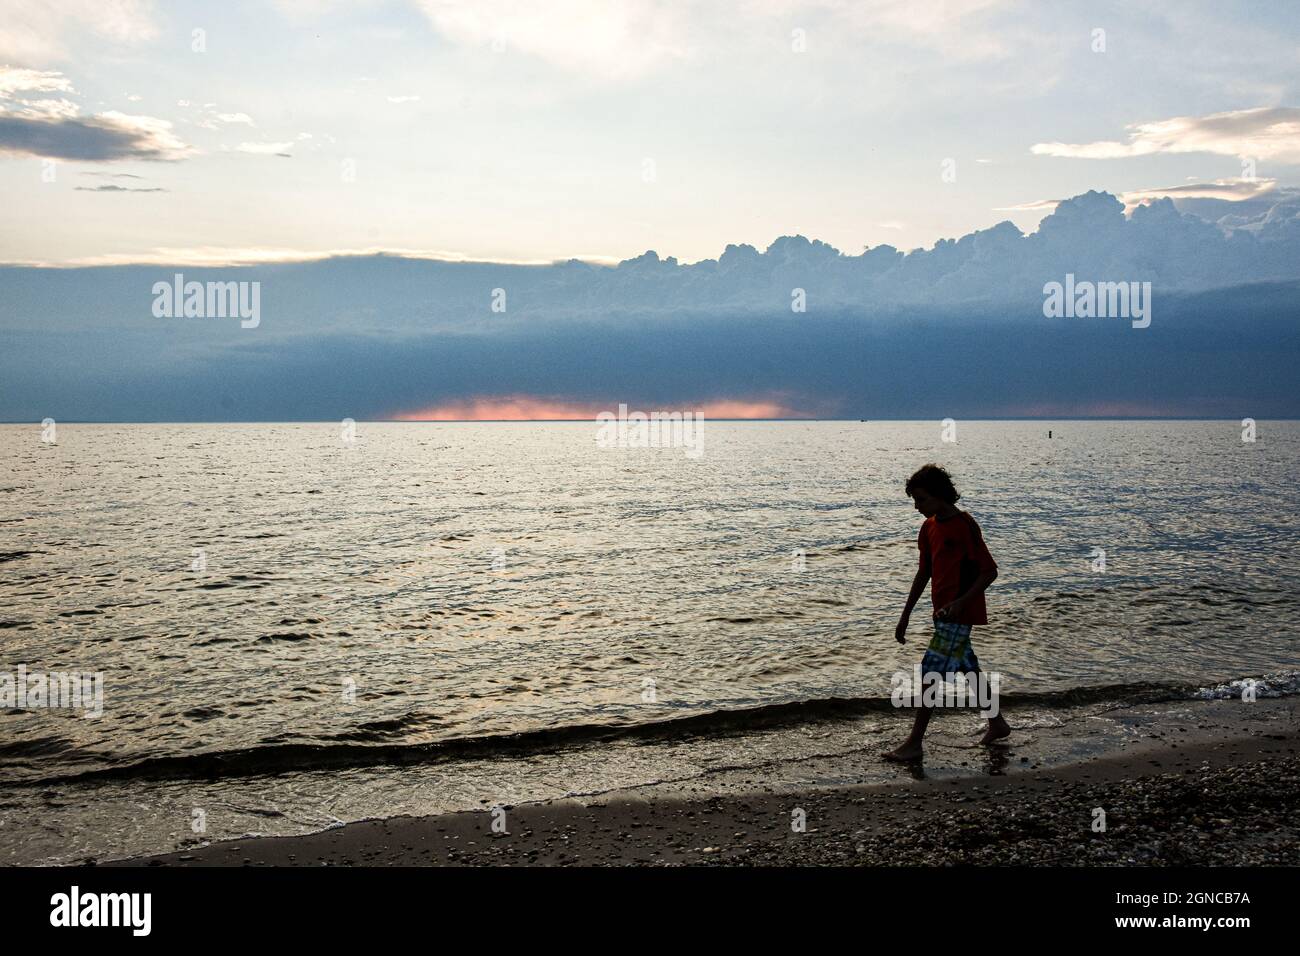 Ein Junge in Silhouette geht am Strand entlang, mit Gewitterwolken, die sich am fernen Horizont aufbauen. Speicherplatz kopieren. Stockfoto